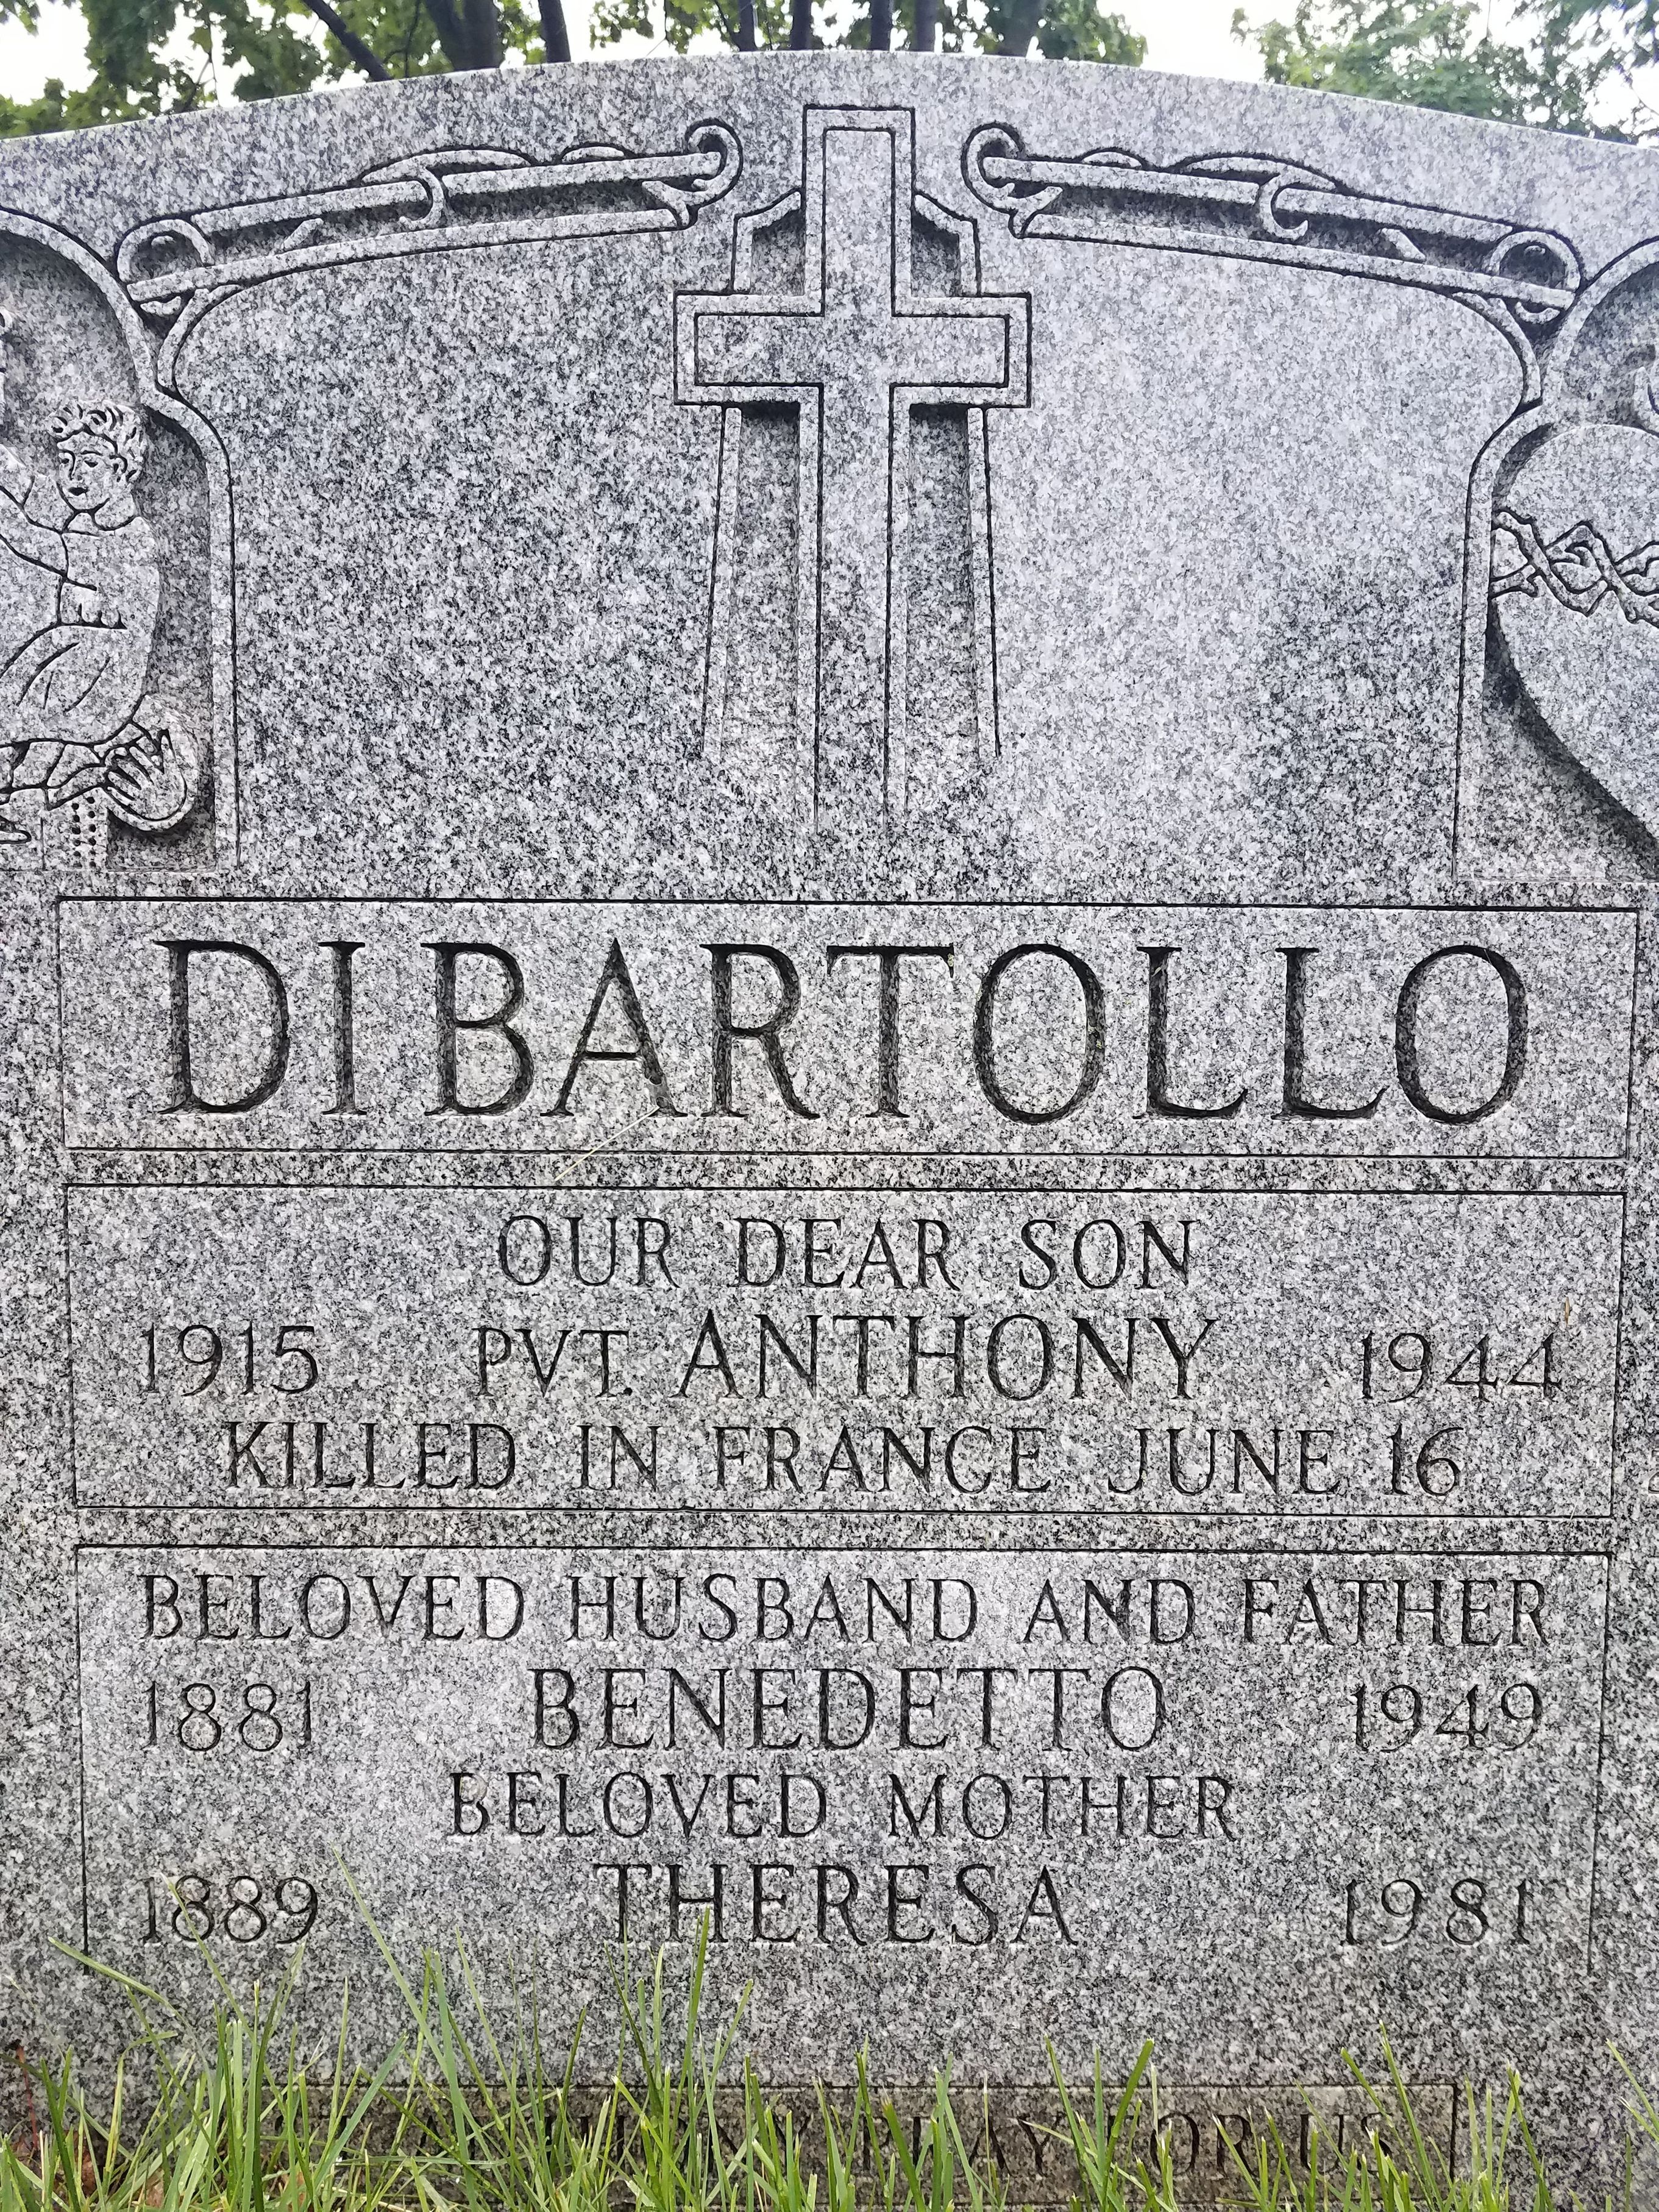 Headstone DiBartollo